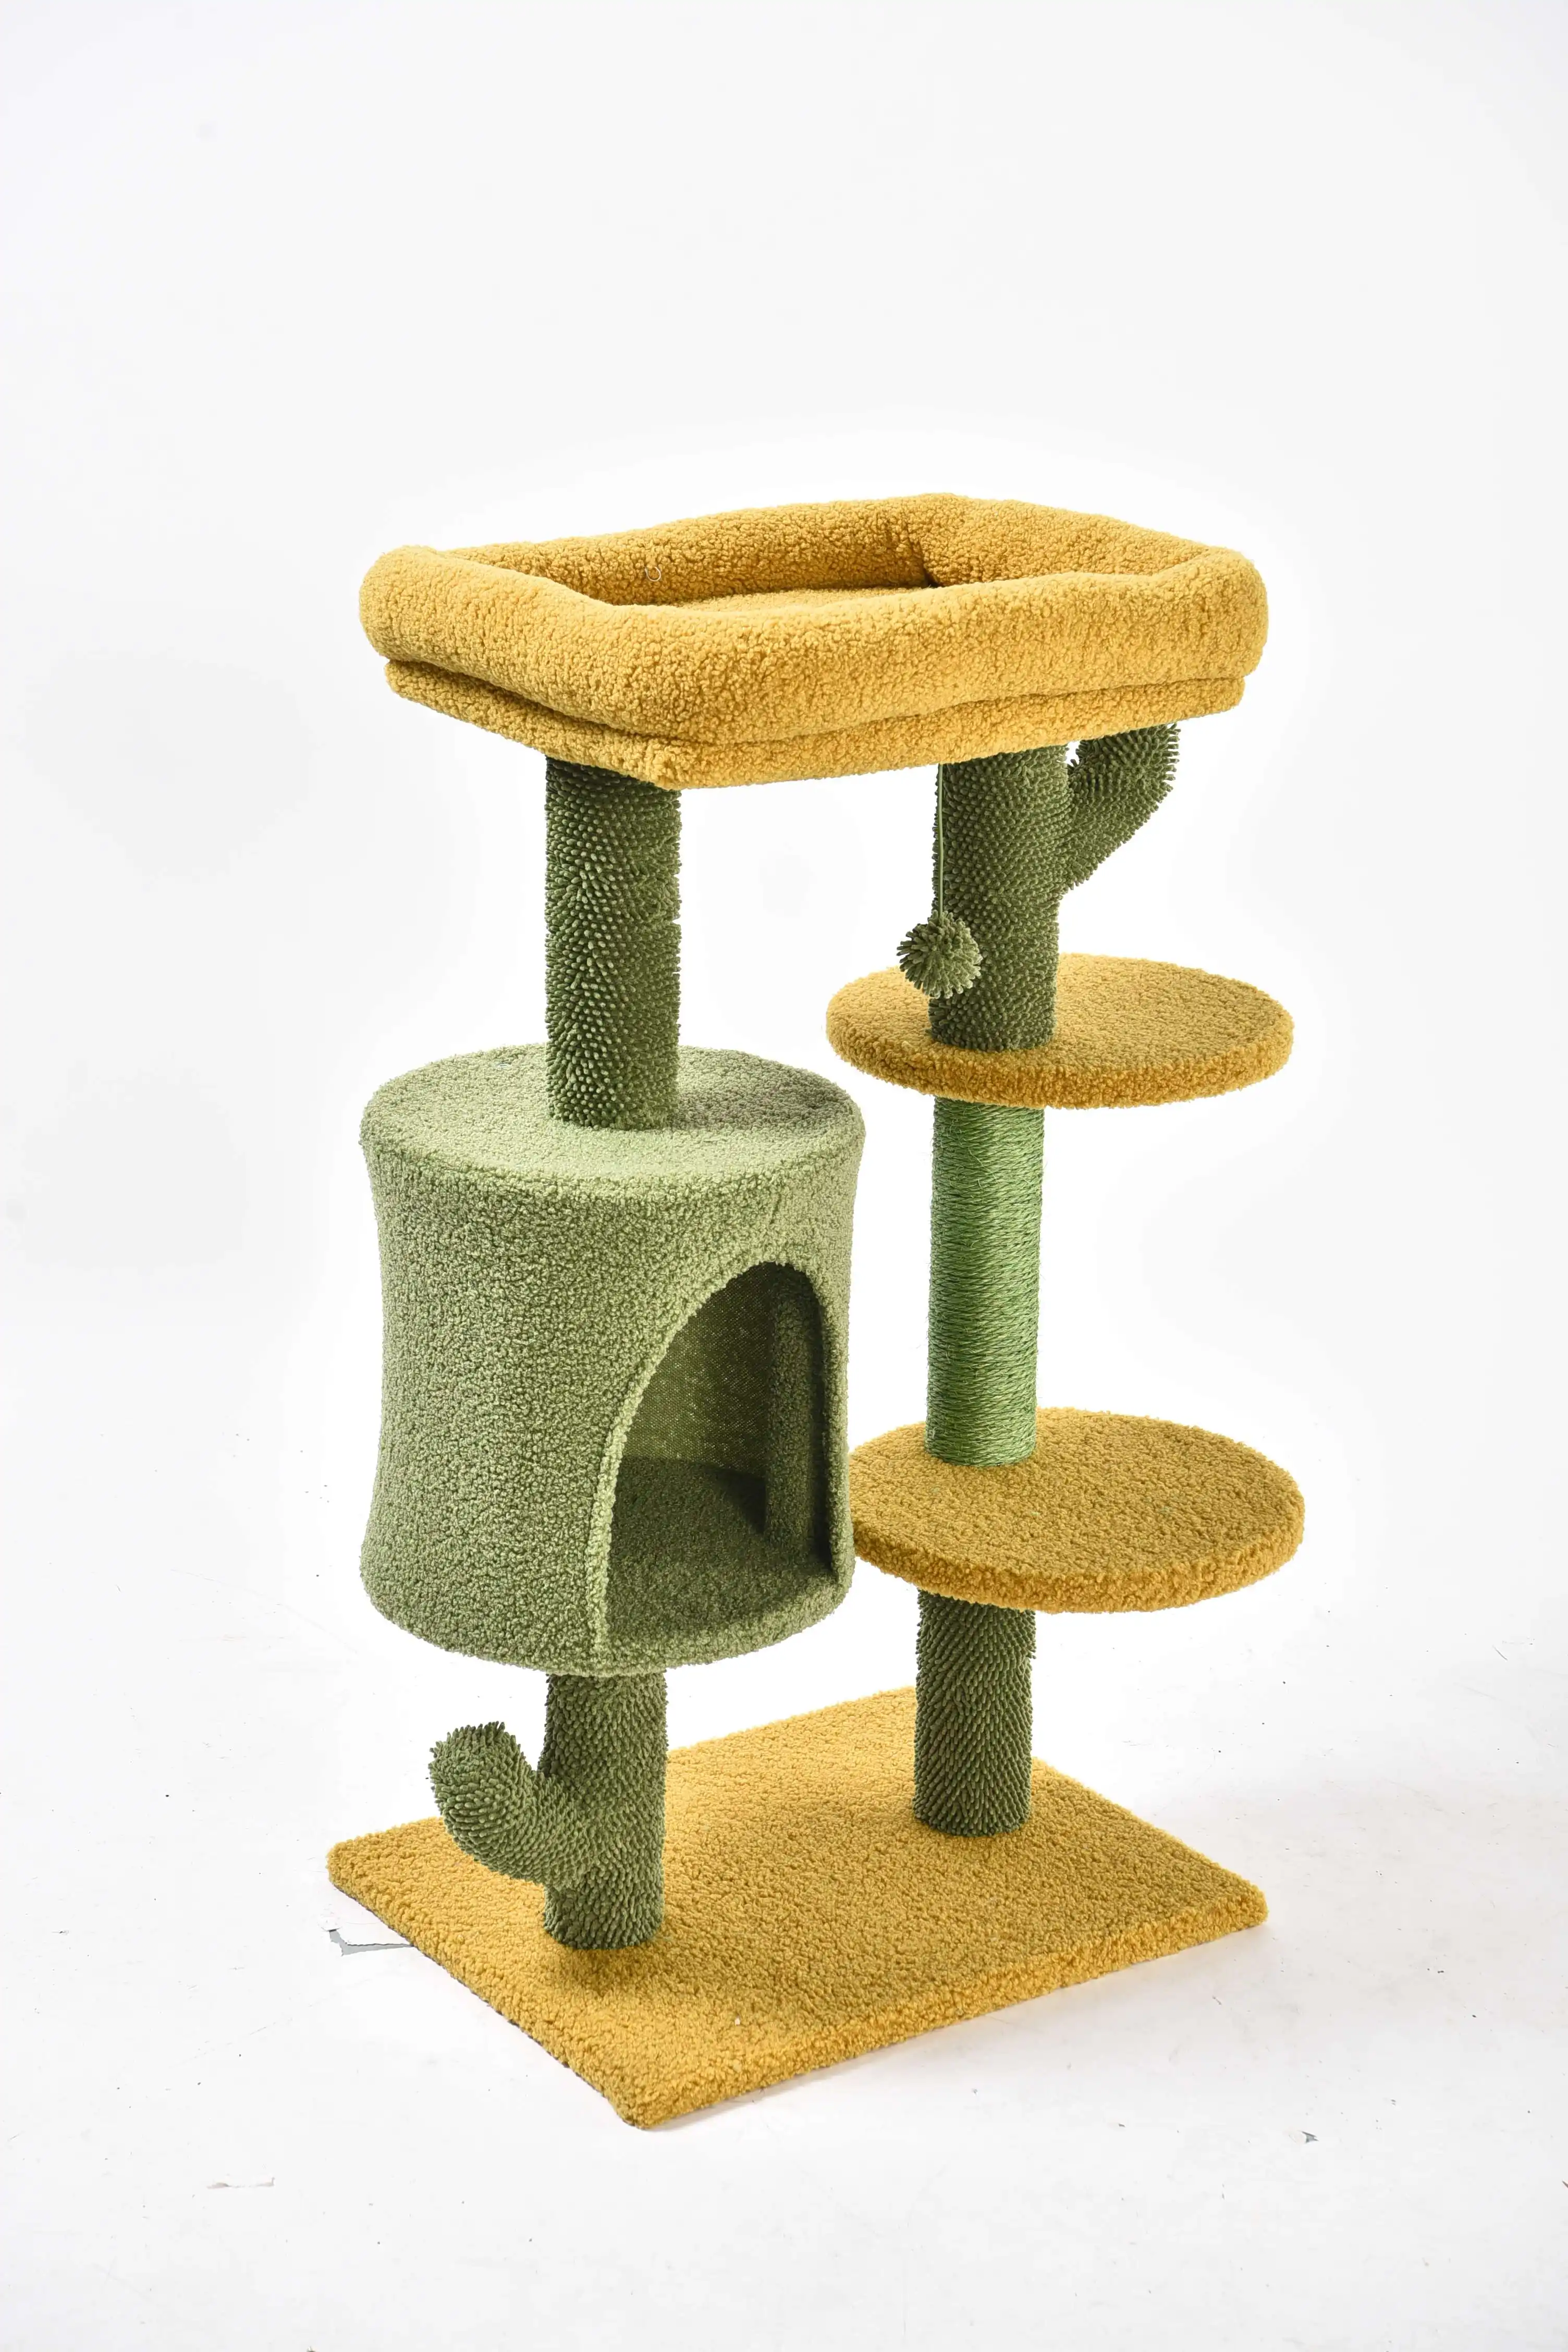 Huisdierenproducten Cactus Serie Zacht Bont Platform Kat Krabber Condo Toren Cactus Kattenboom